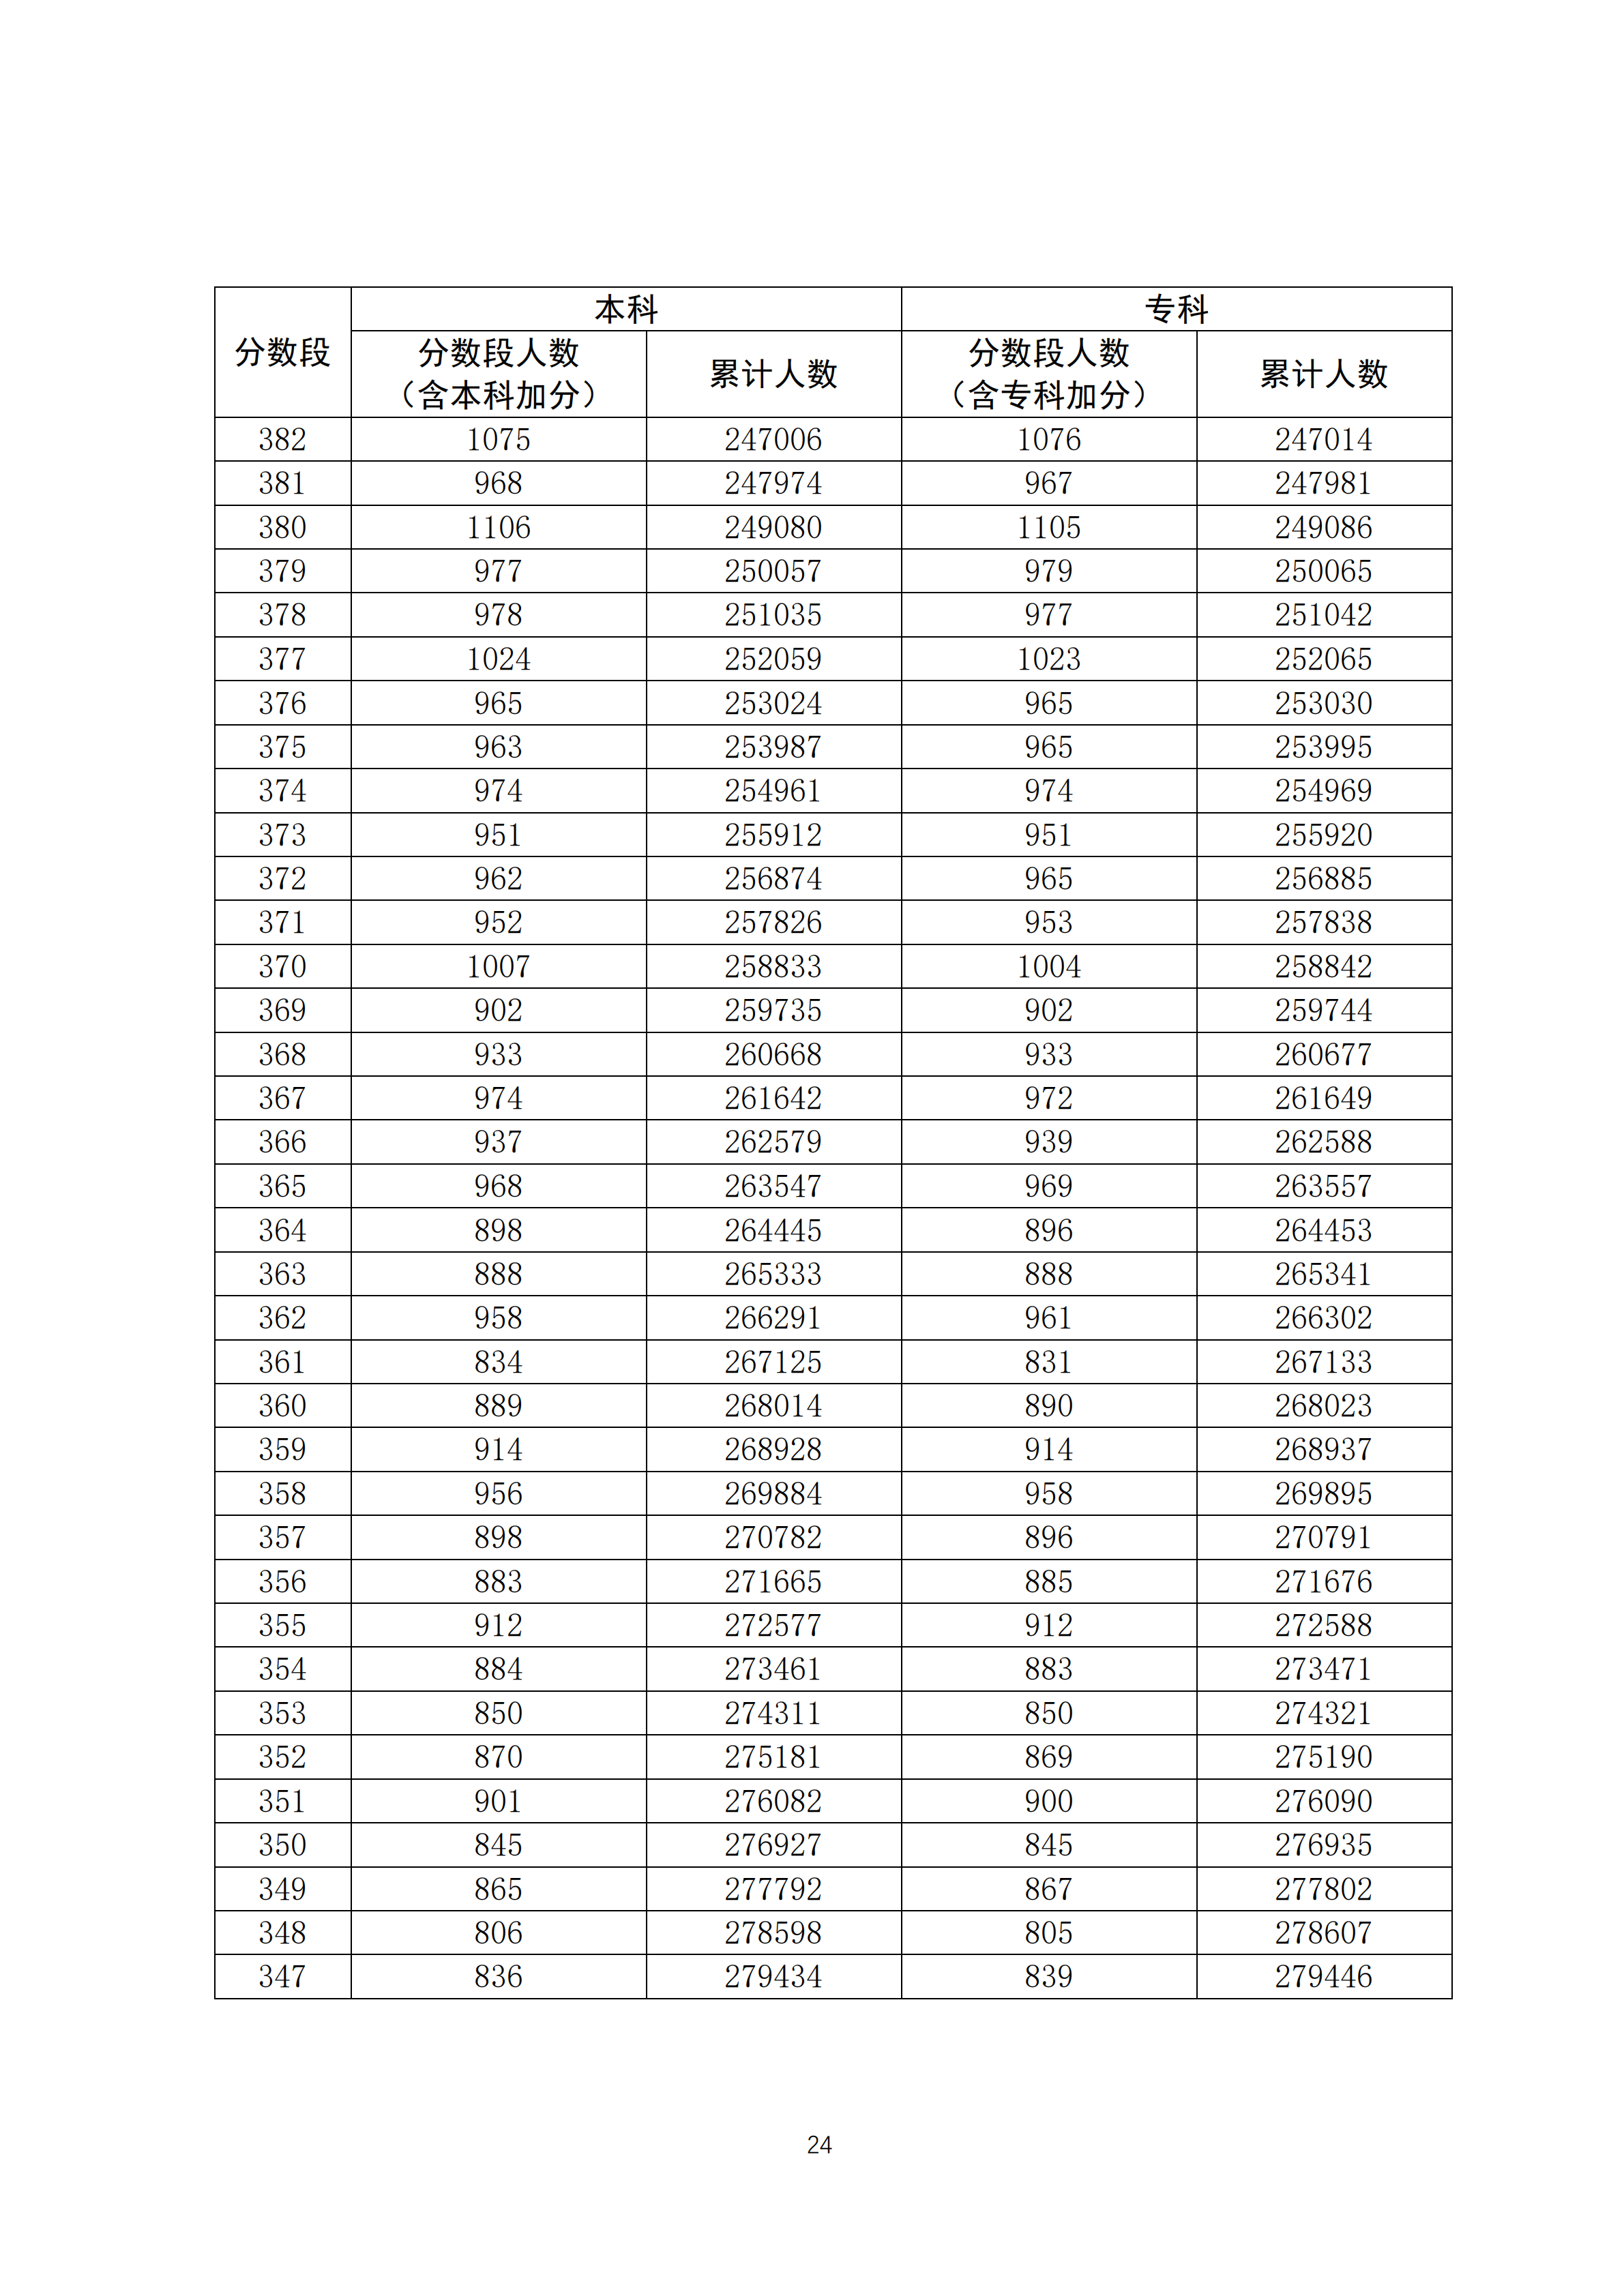 2020广东高考一分一段表 文科理科高考成绩排名